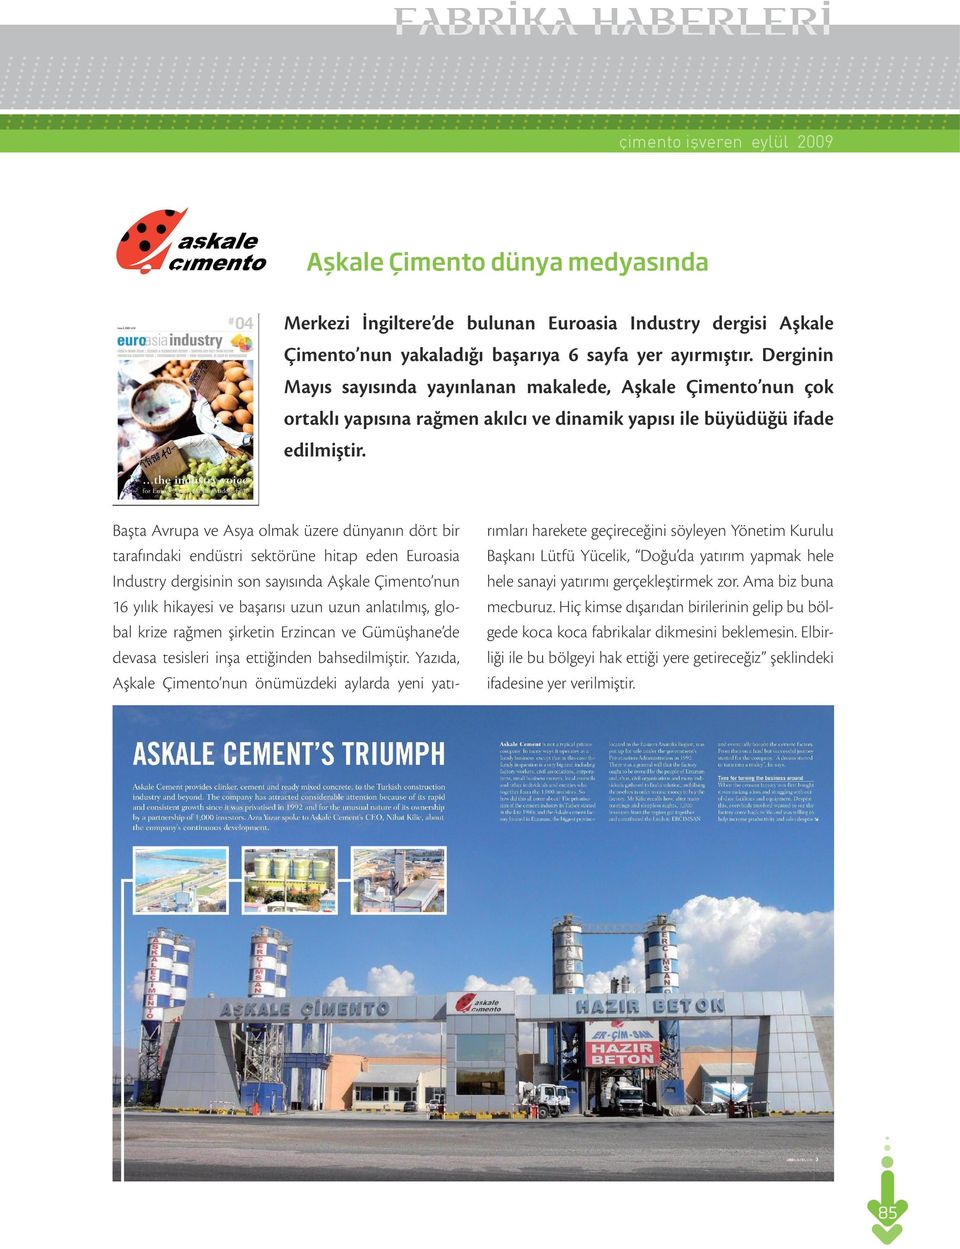 Başta Avrupa ve Asya olmak üzere dünyanın dört bir tarafındaki endüstri sektörüne hitap eden Euroasia Industry dergisinin son sayısında Aşkale Çimento nun 16 yılık hikayesi ve başarısı uzun uzun